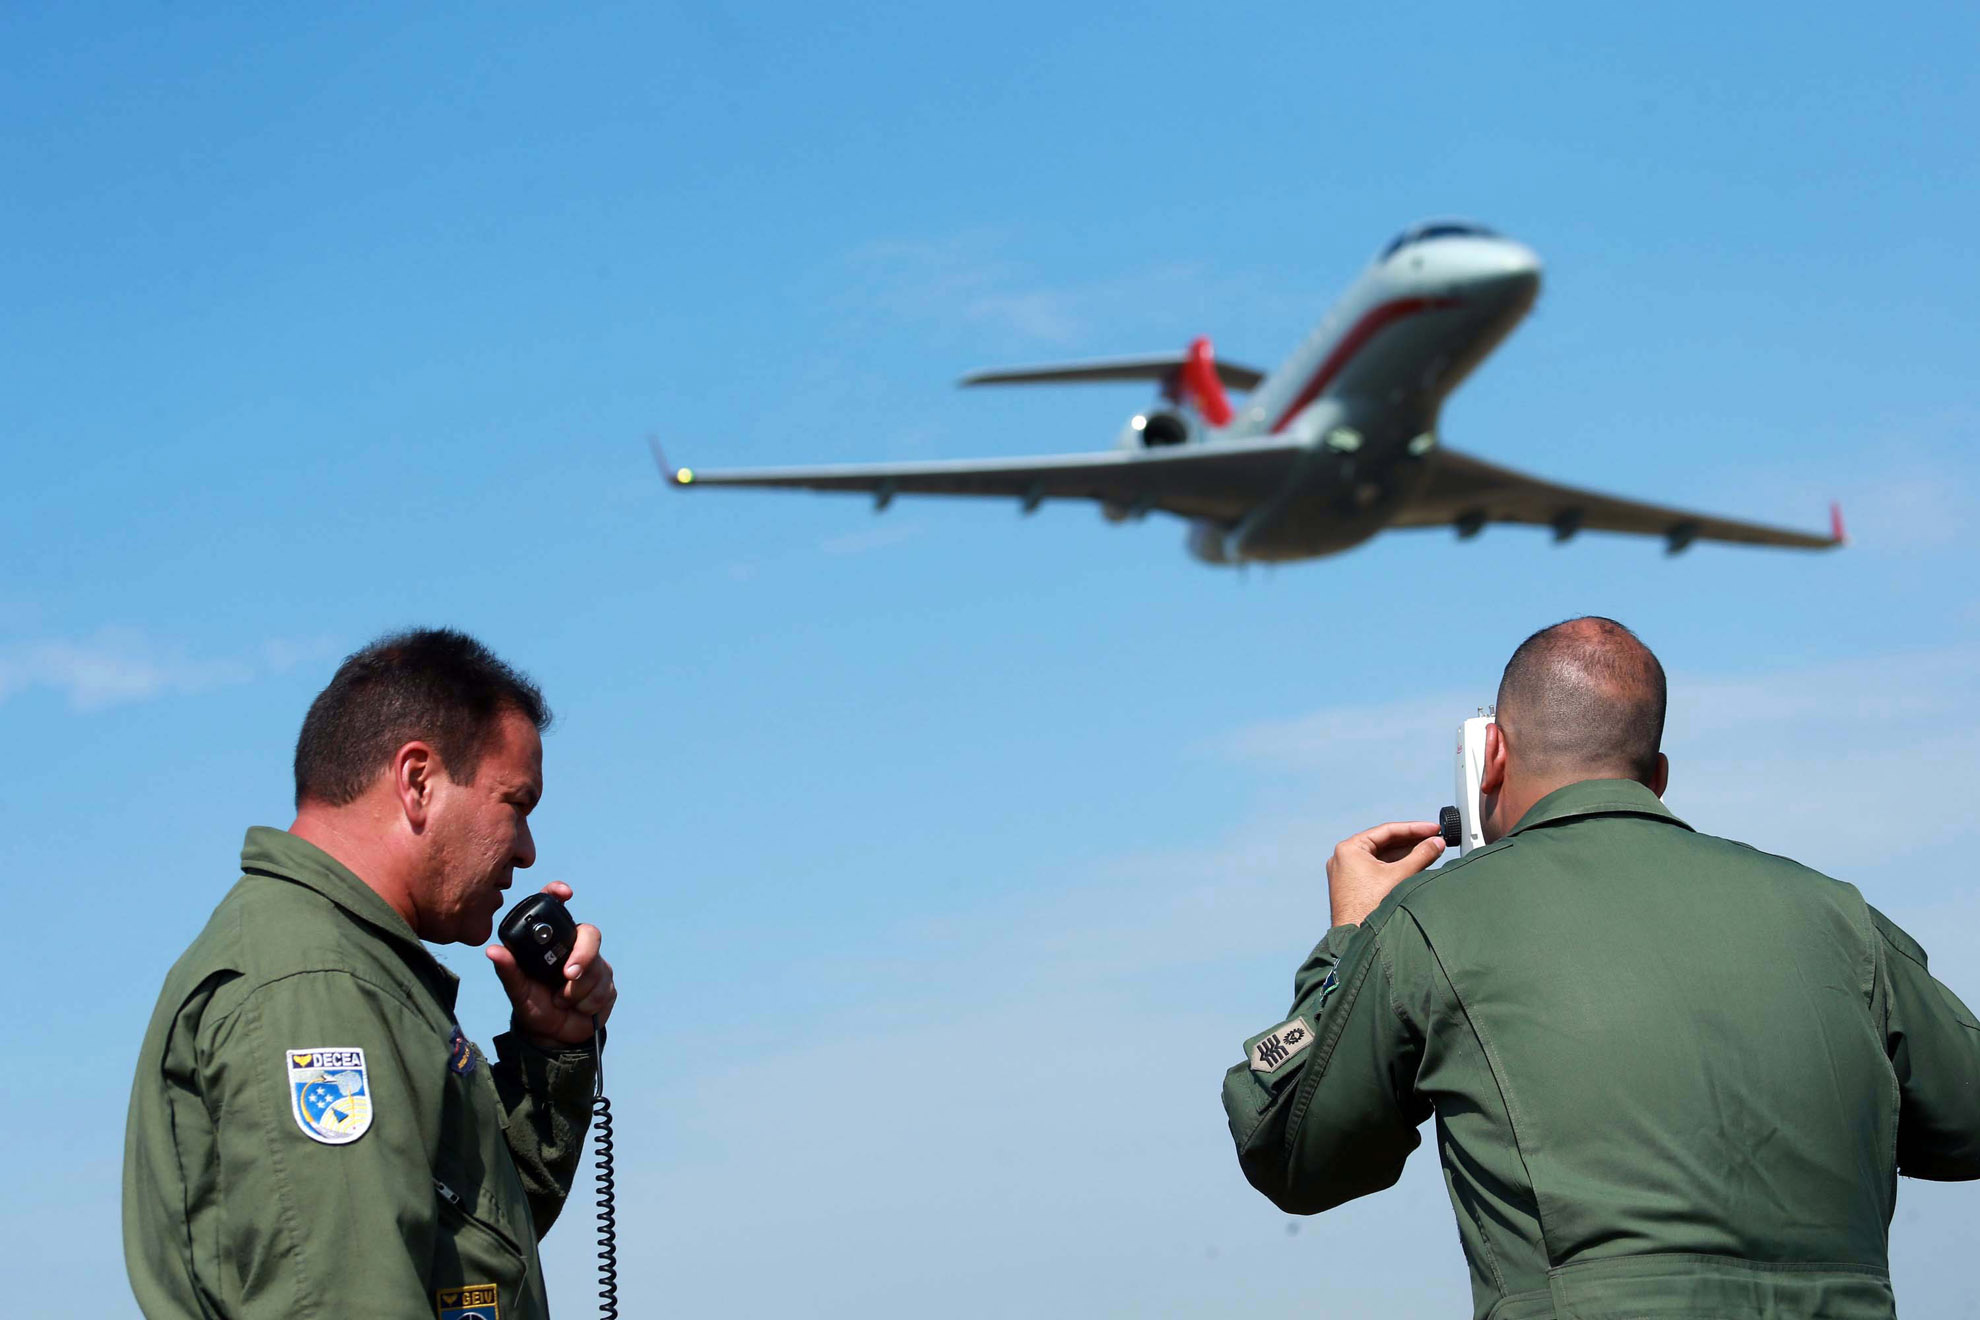 Inspección de Vuelo completa 64 años promoviendo la seguridad de vuelo en el espacio aéreo brasileño